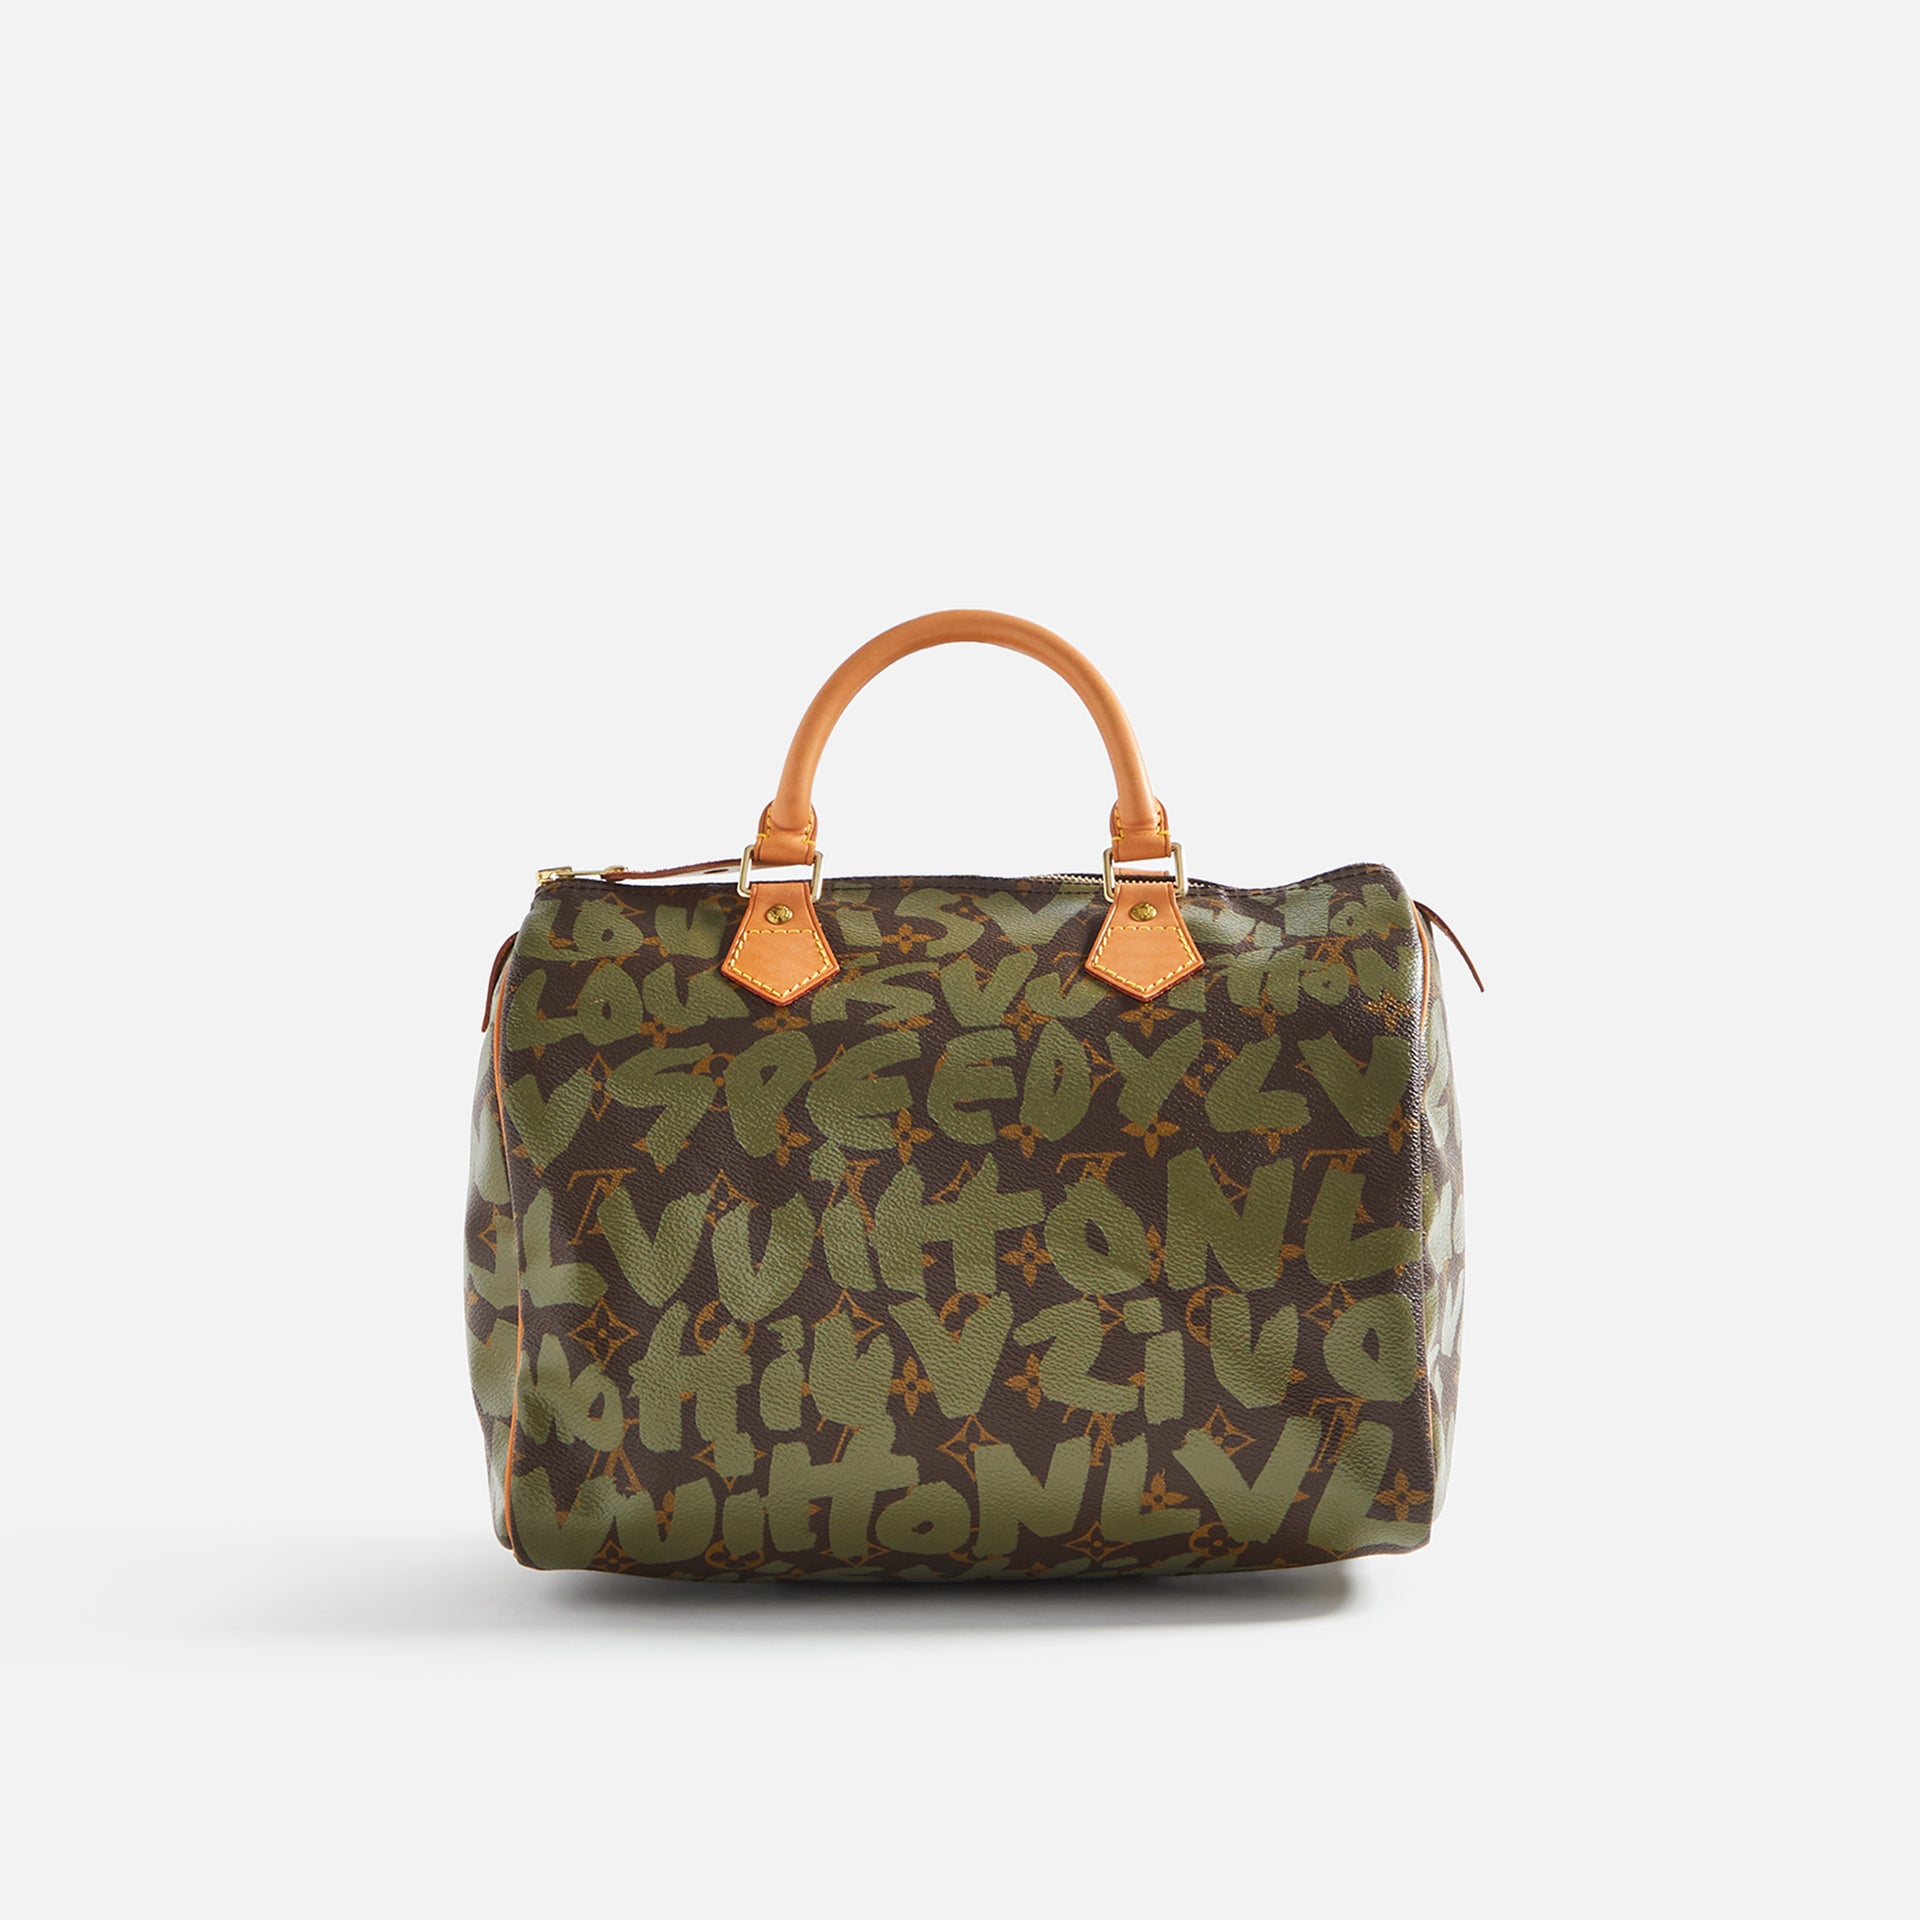 WGACA Louis Vuitton x Stephen Sprouse Speedy 30 - Green